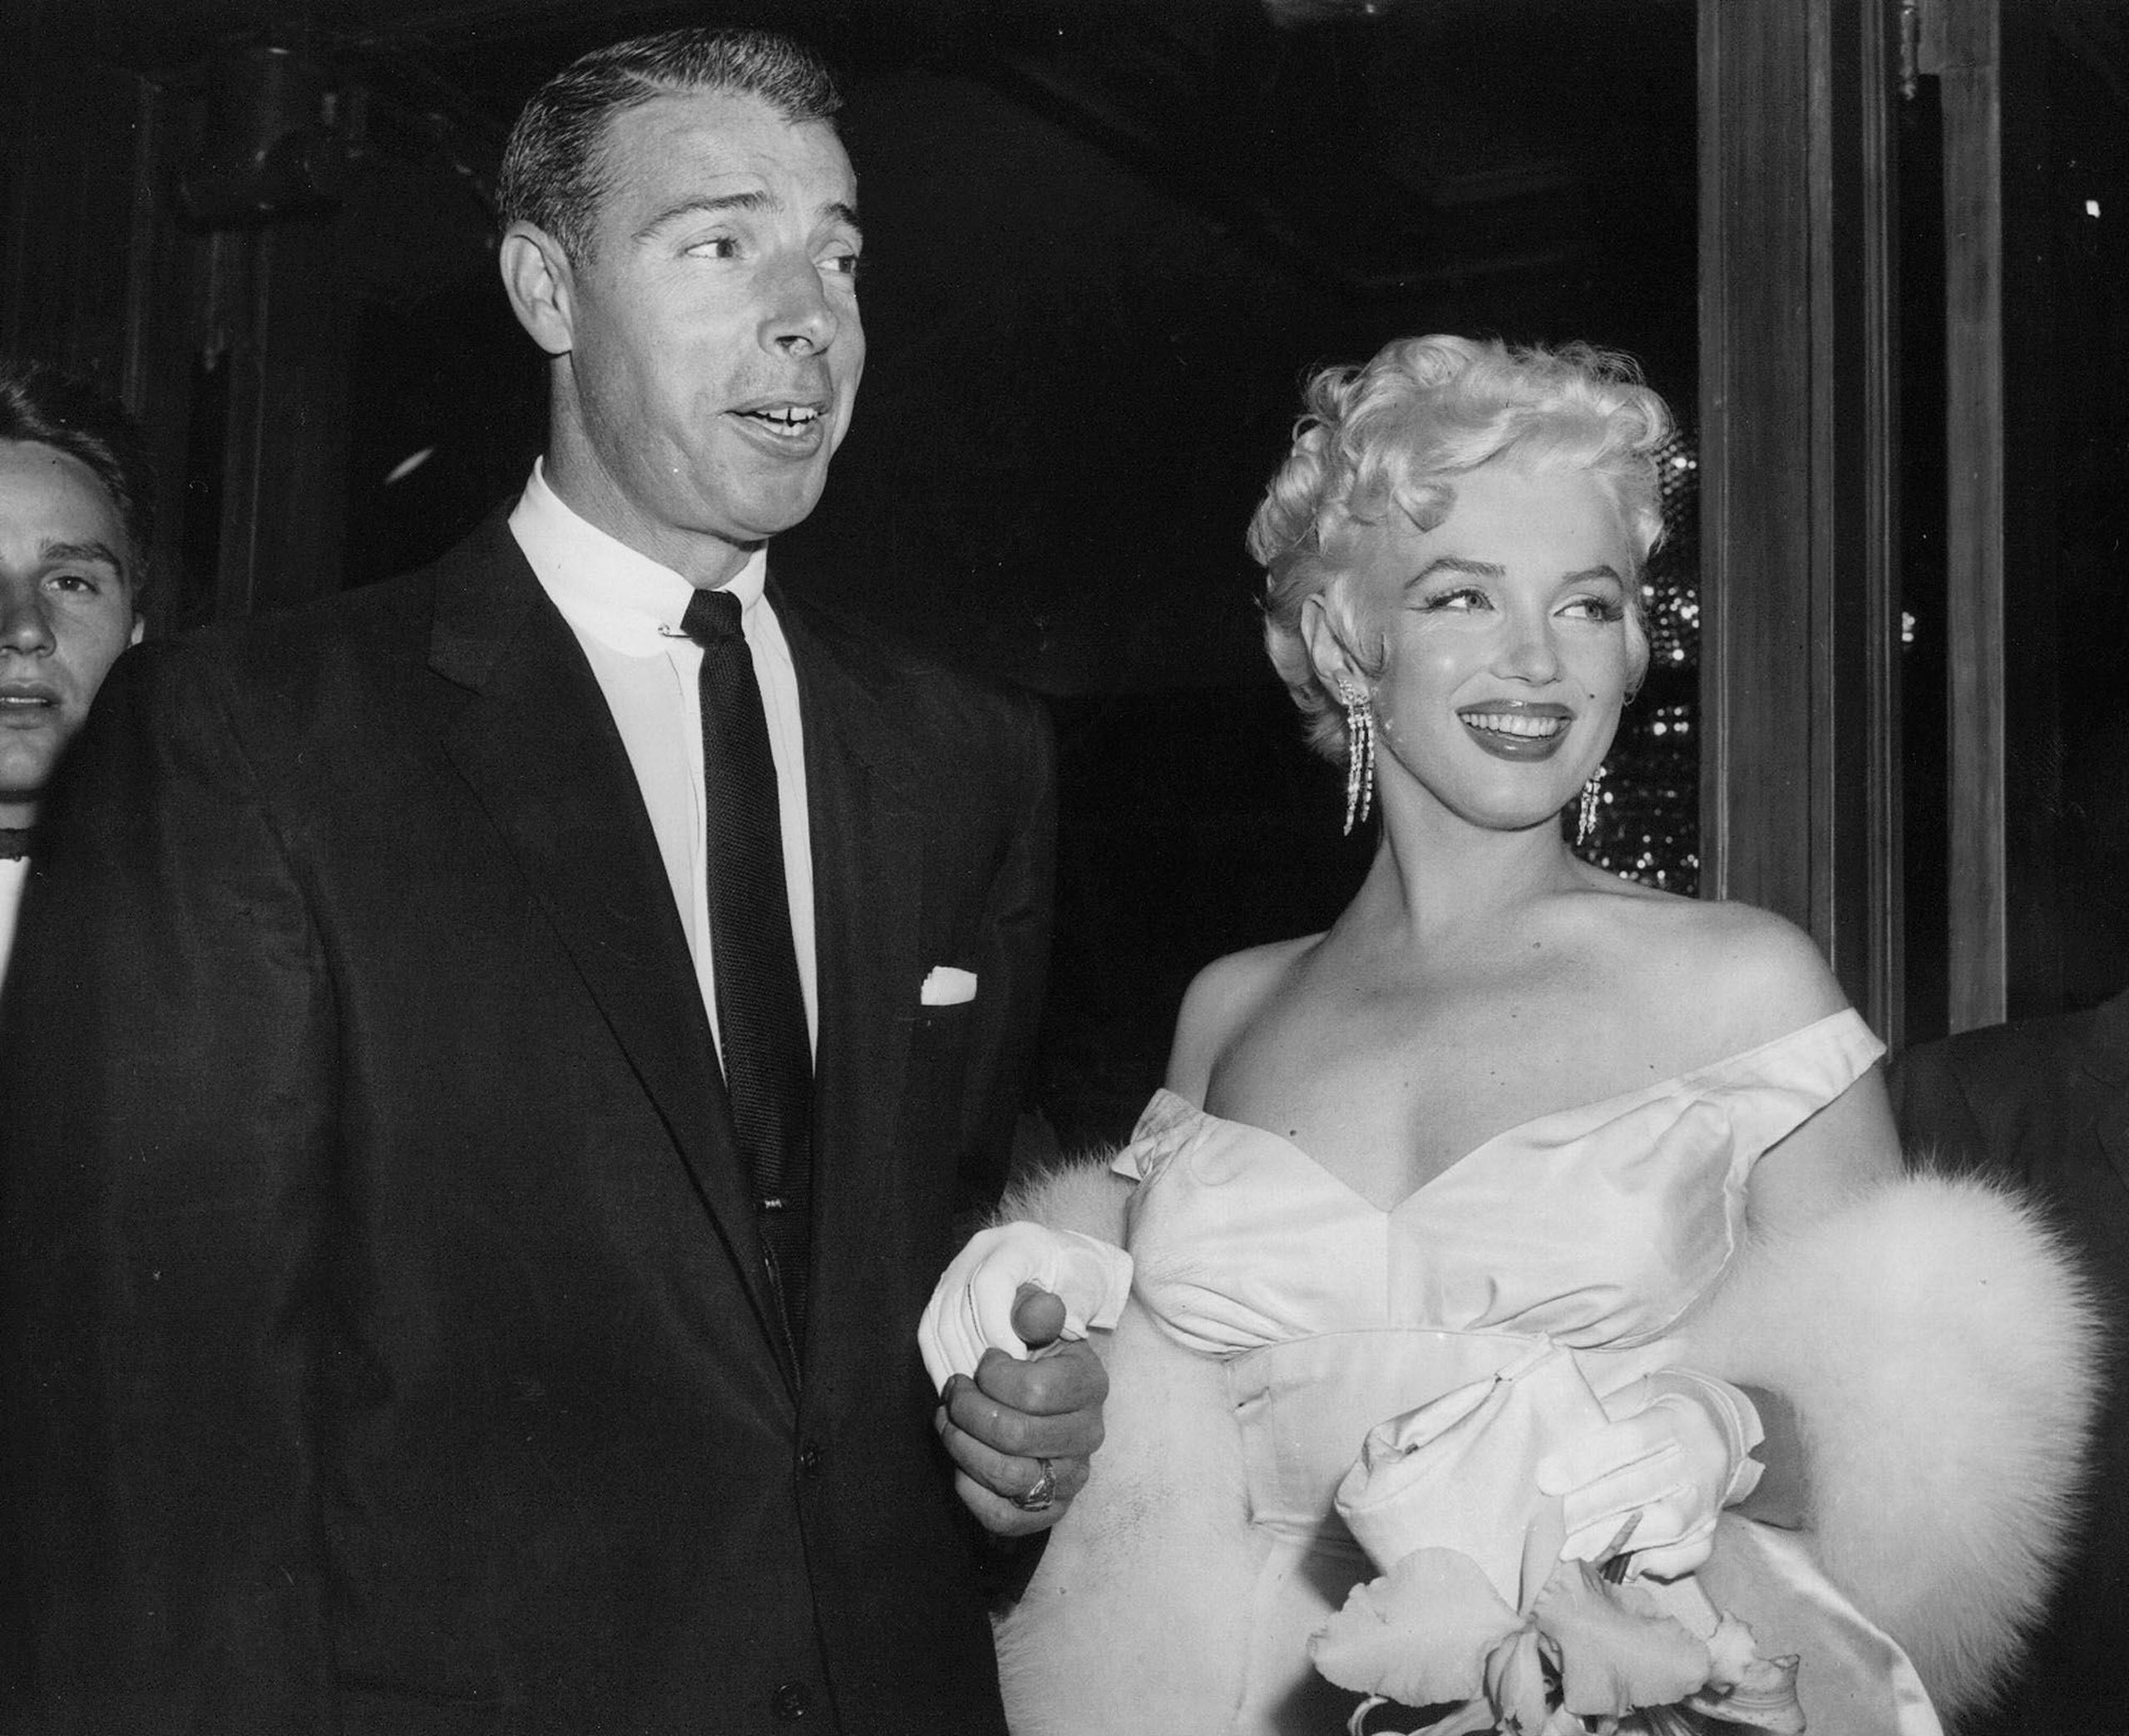 "Mi corazón se parte todavía más al verte llorar frente a todas estas personas", le escribió Joe DiMaggio a Marilyn Monroe.